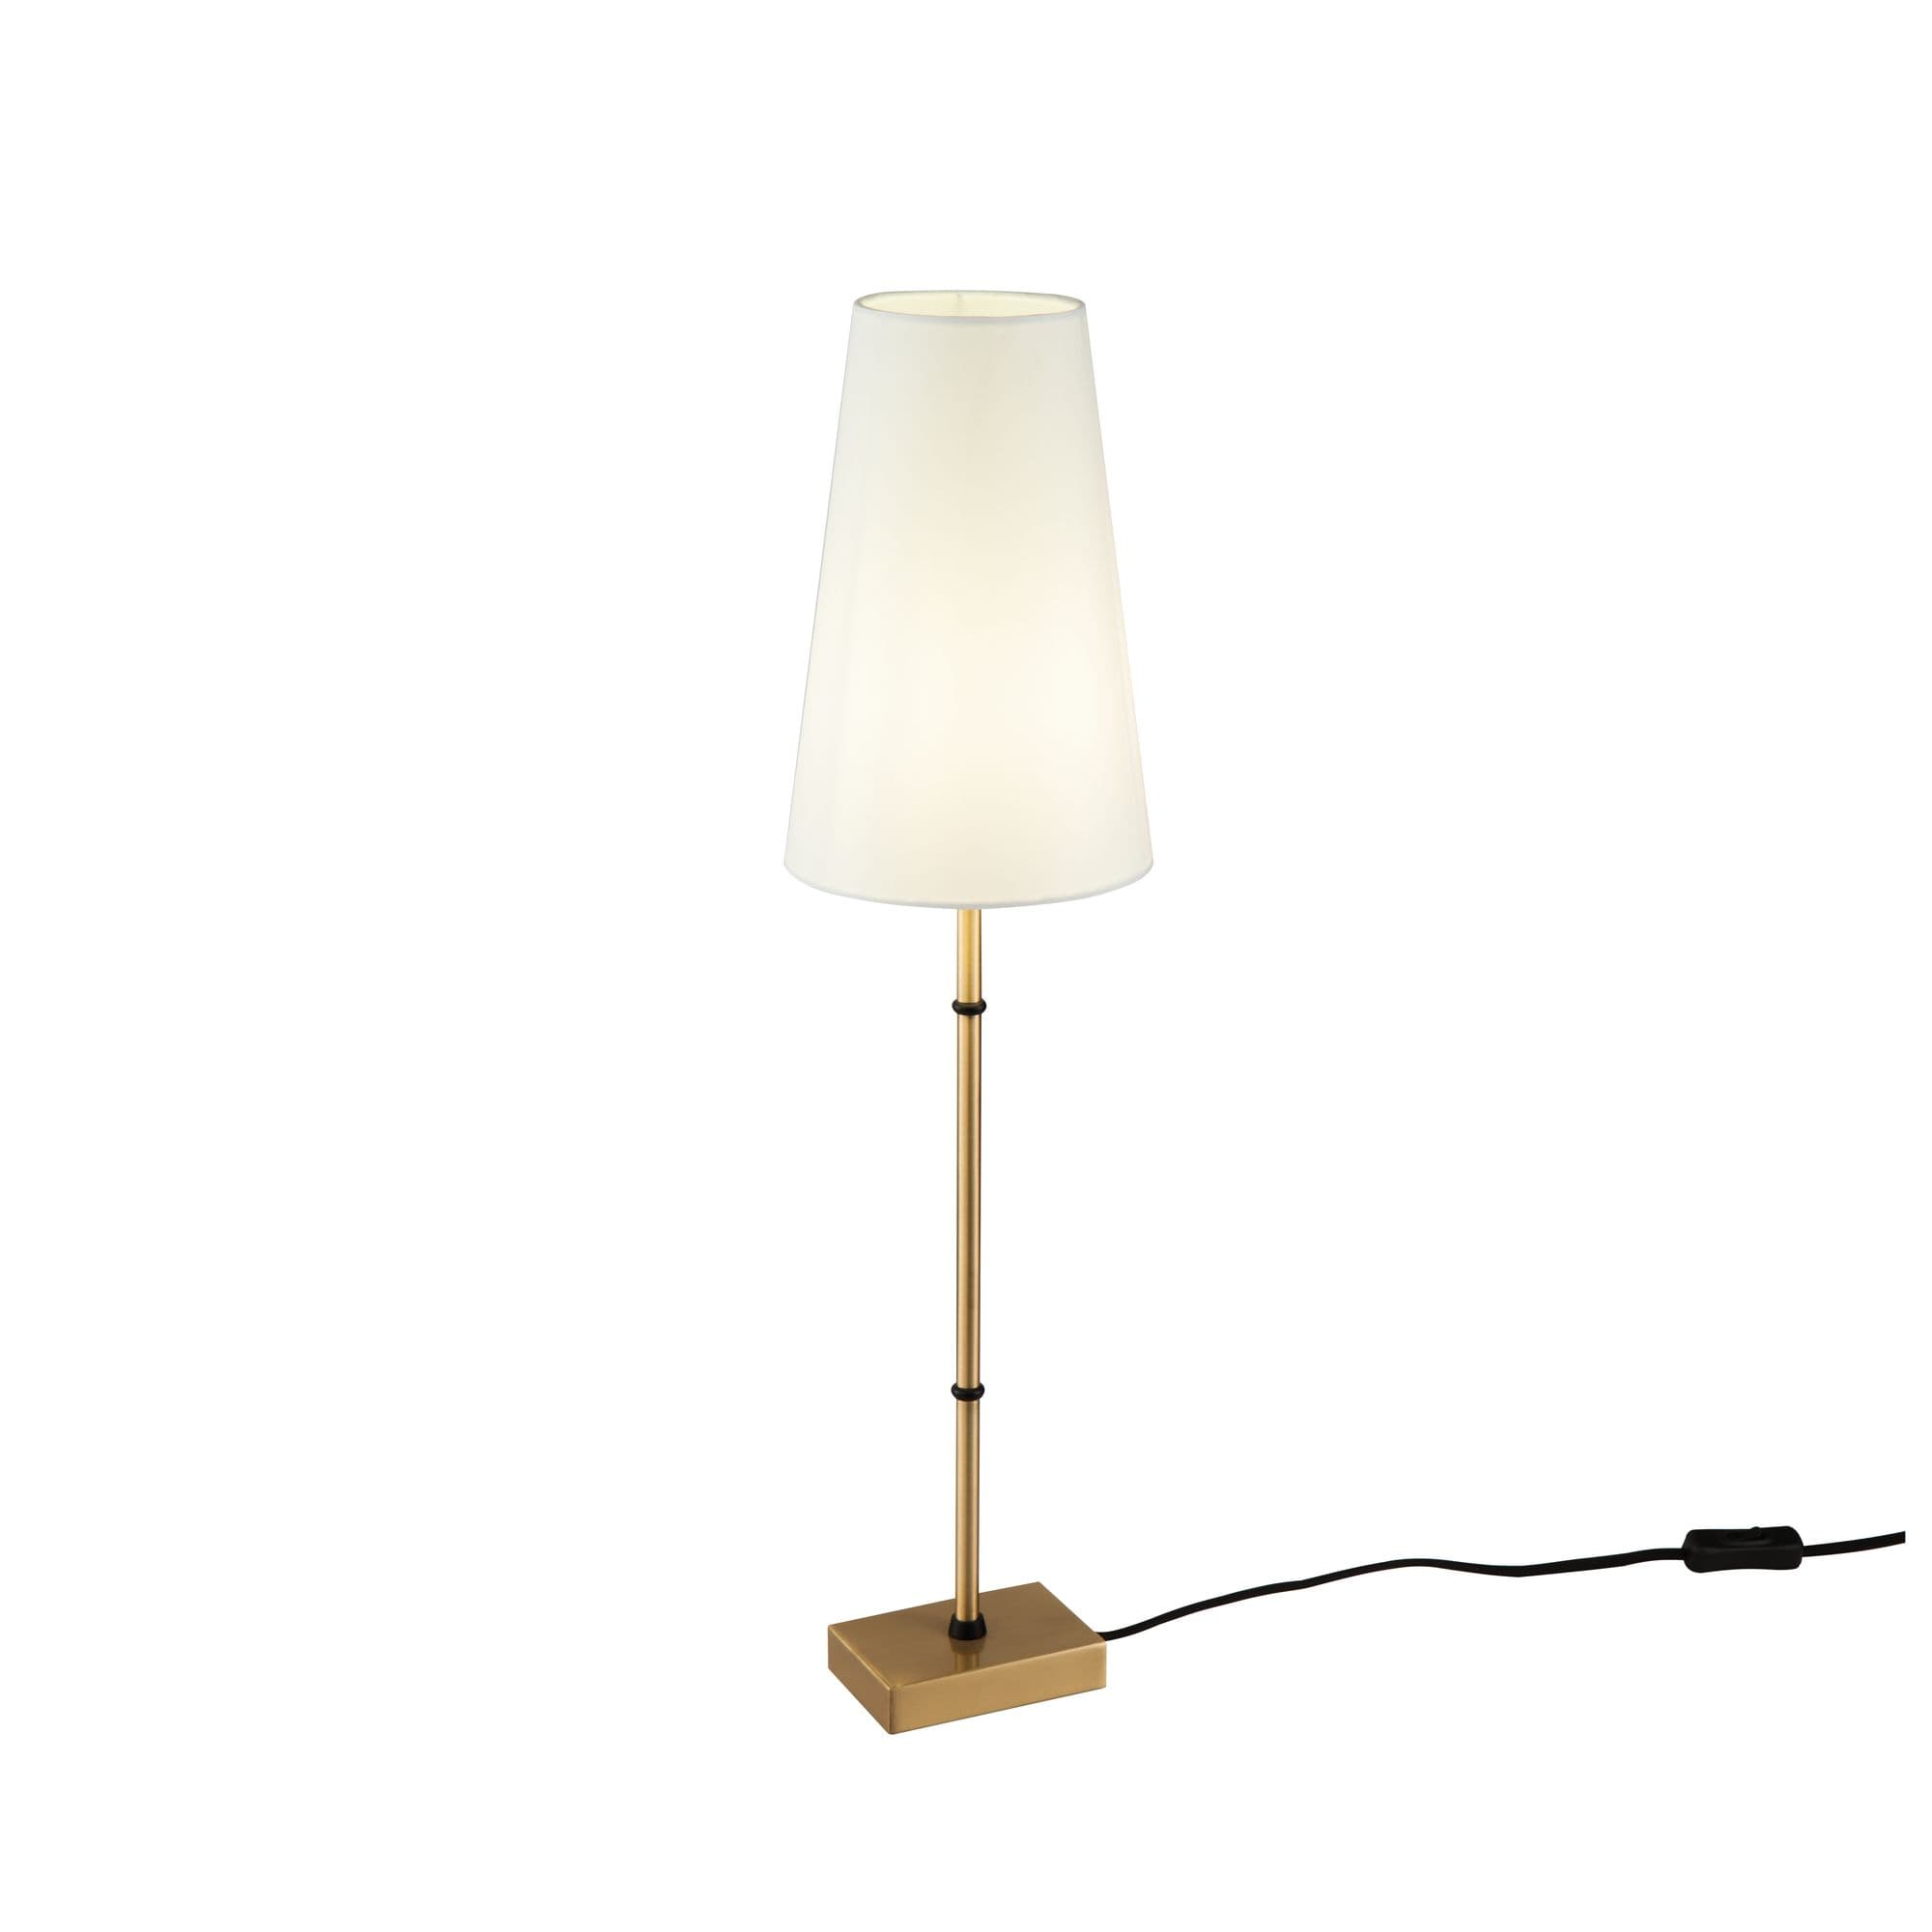 Купить Настольная лампа Zaragoza в интернет-магазине roooms.ru